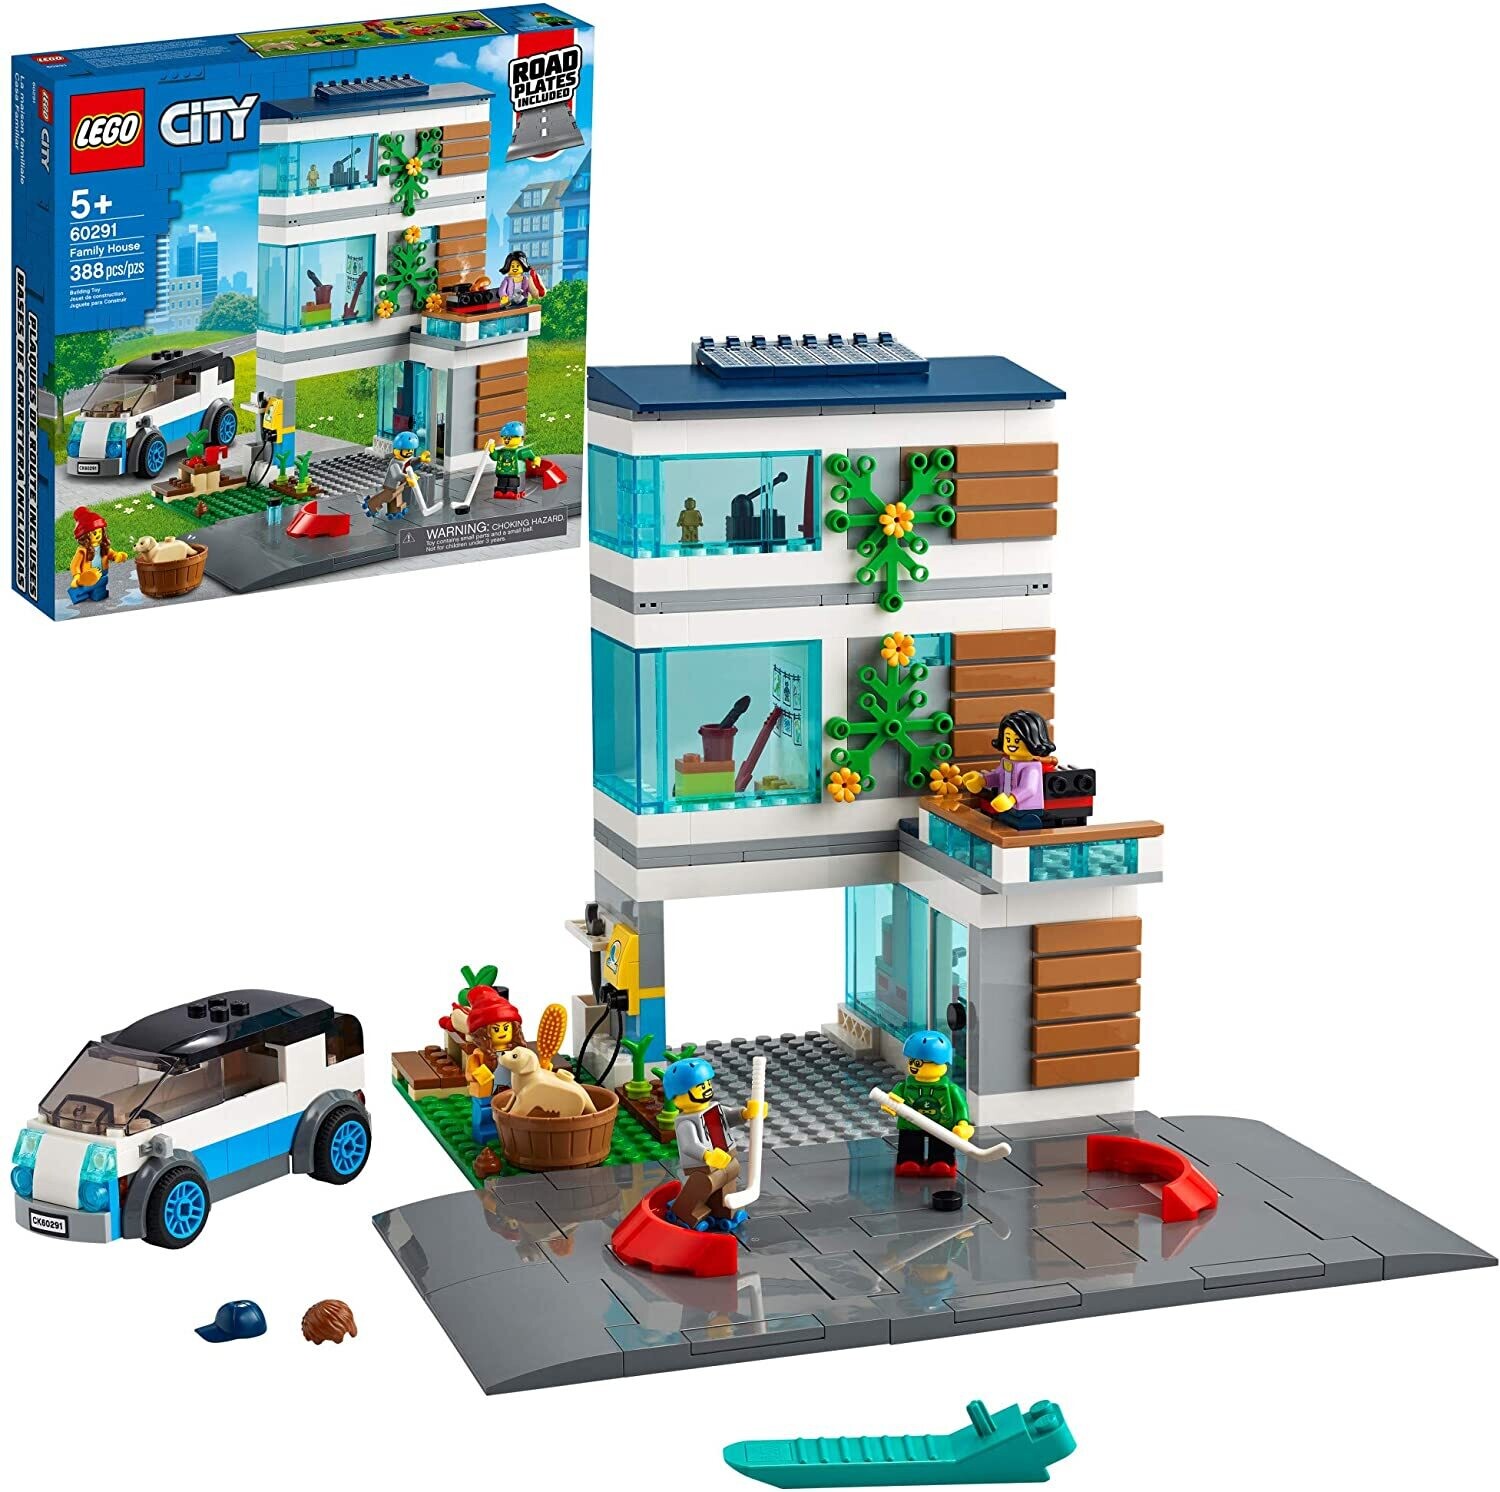 Lego 60291 City Family House